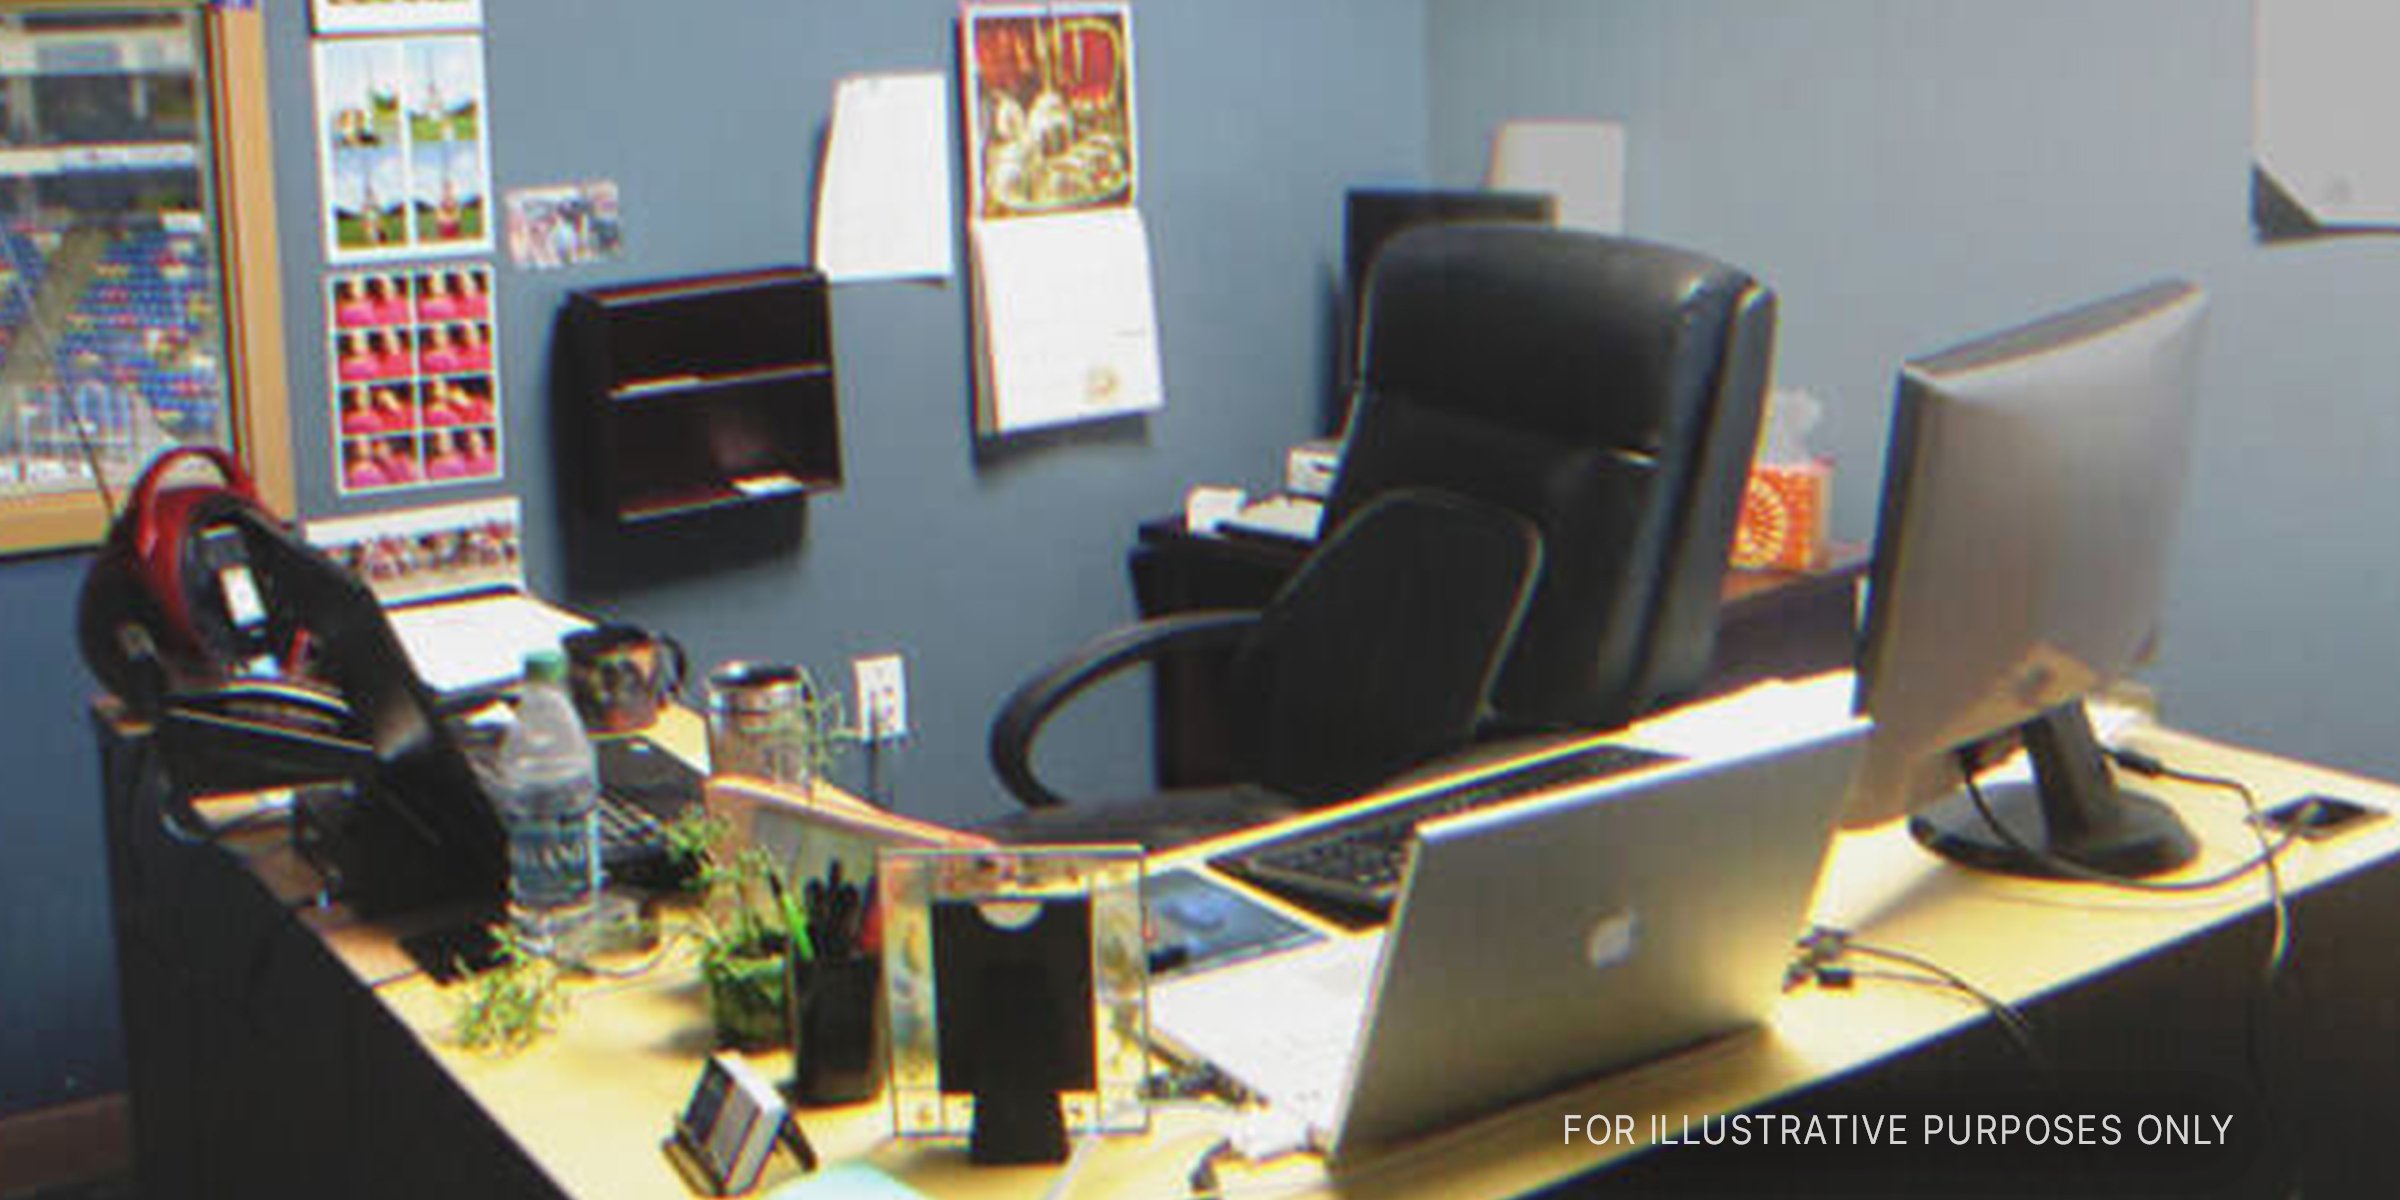 A regular office desk. | Source: Flickr/moonlightbulb (CC BY 2.0)